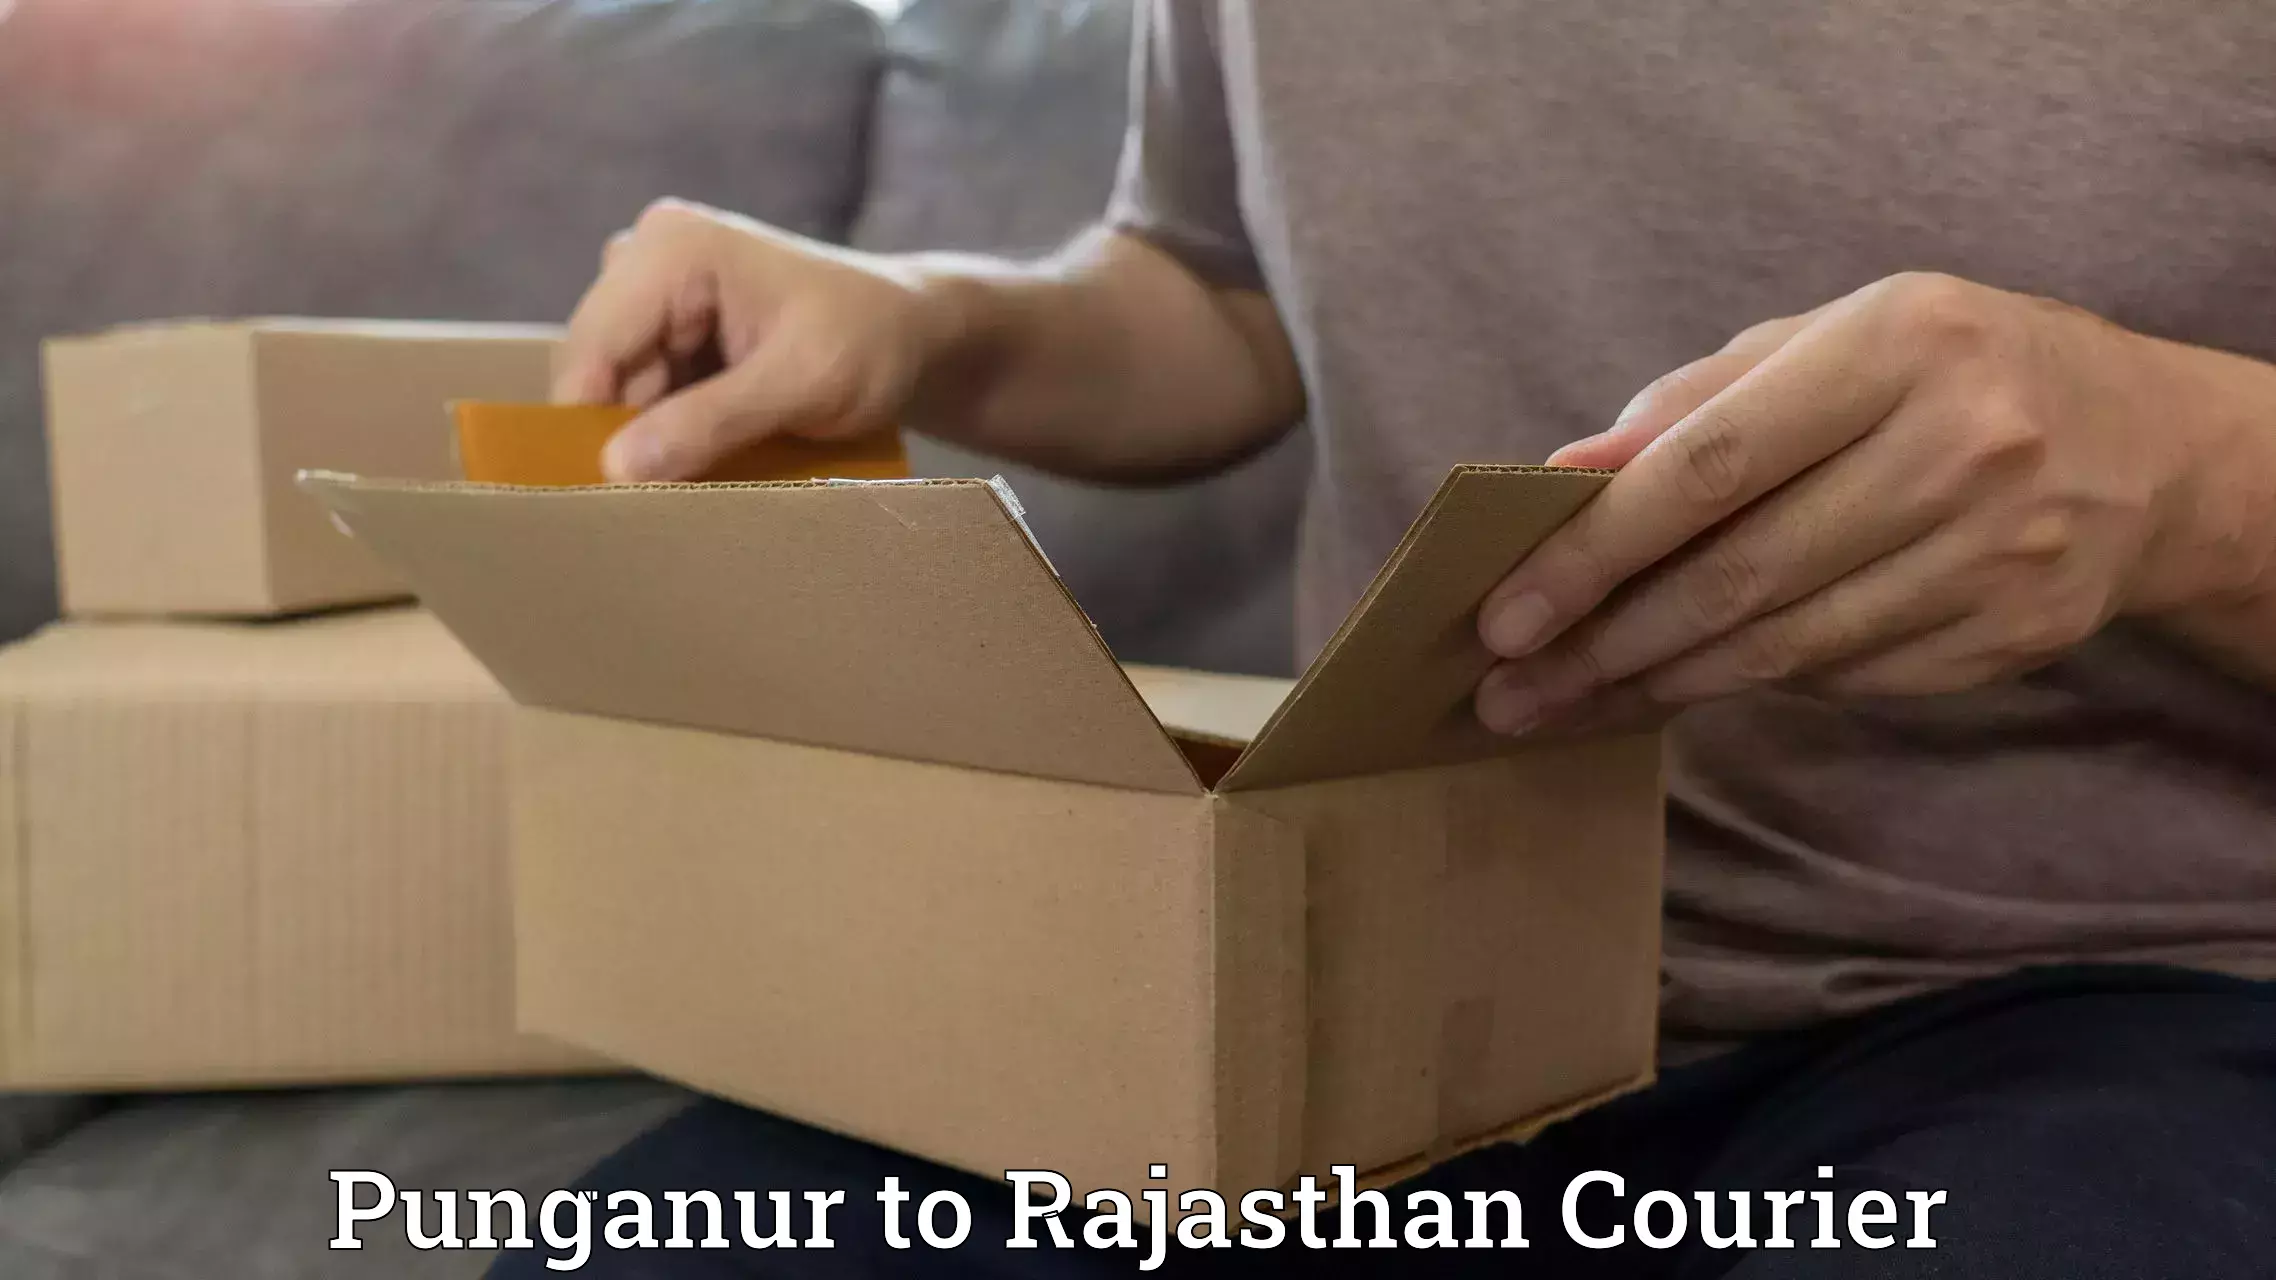 Efficient parcel service Punganur to Yathalakunta